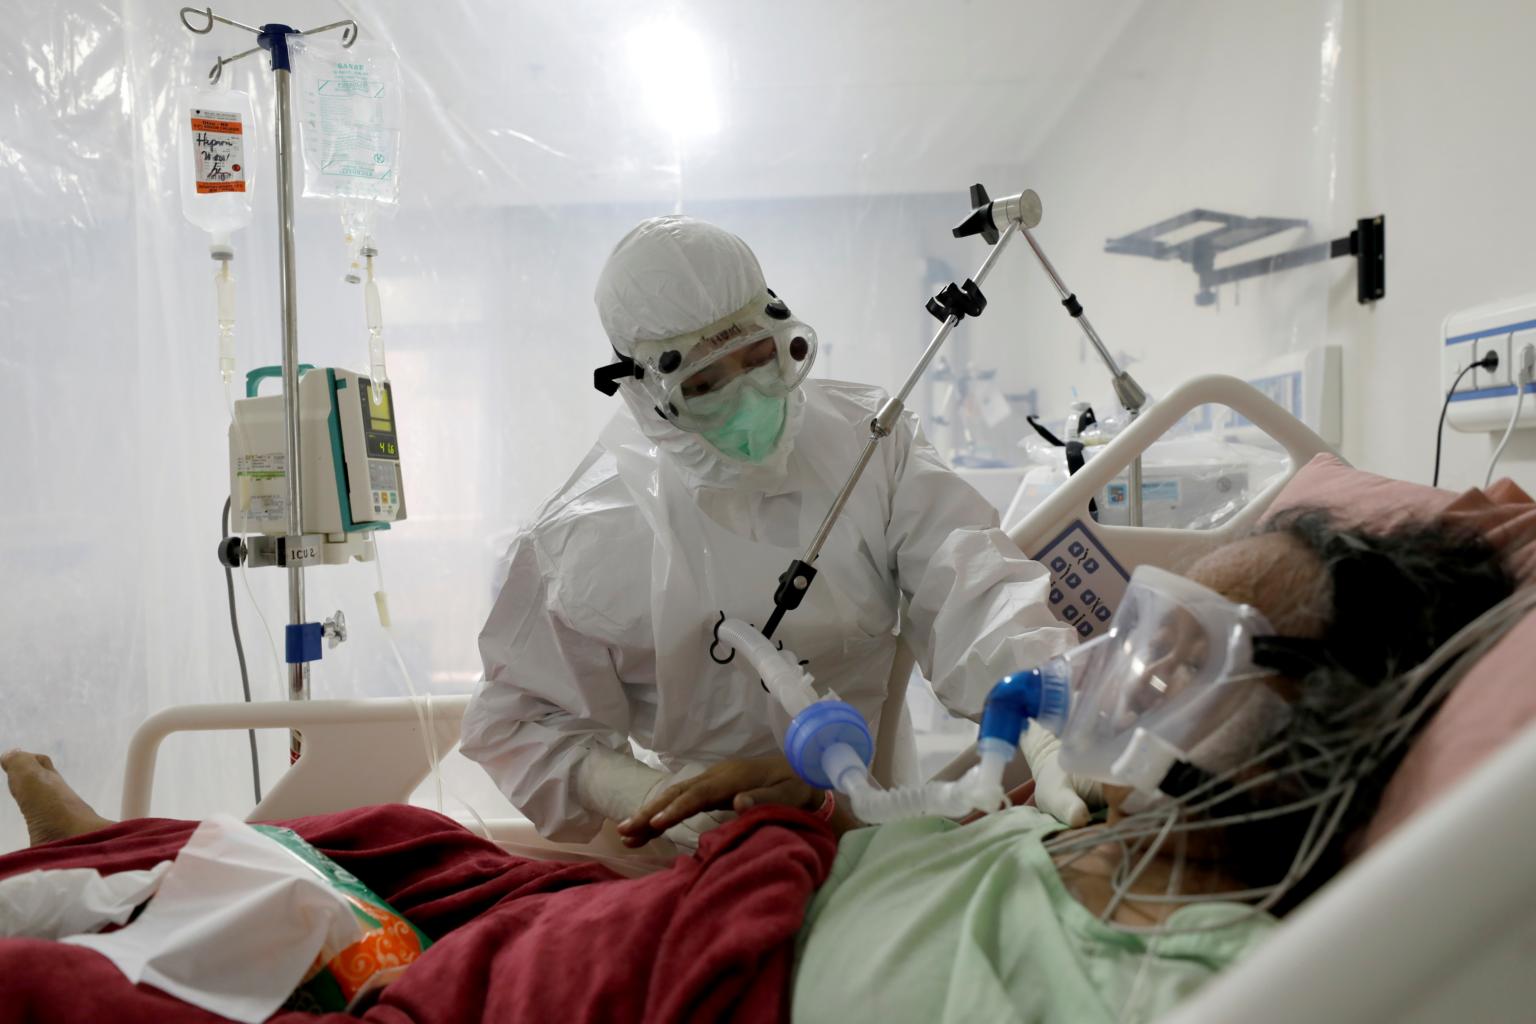 Hệ thống chăm sóc sức khỏe mong manh của Indonesia đang đứng trên bờ vực của sự sụp đổ. ẢNH: REUTERS